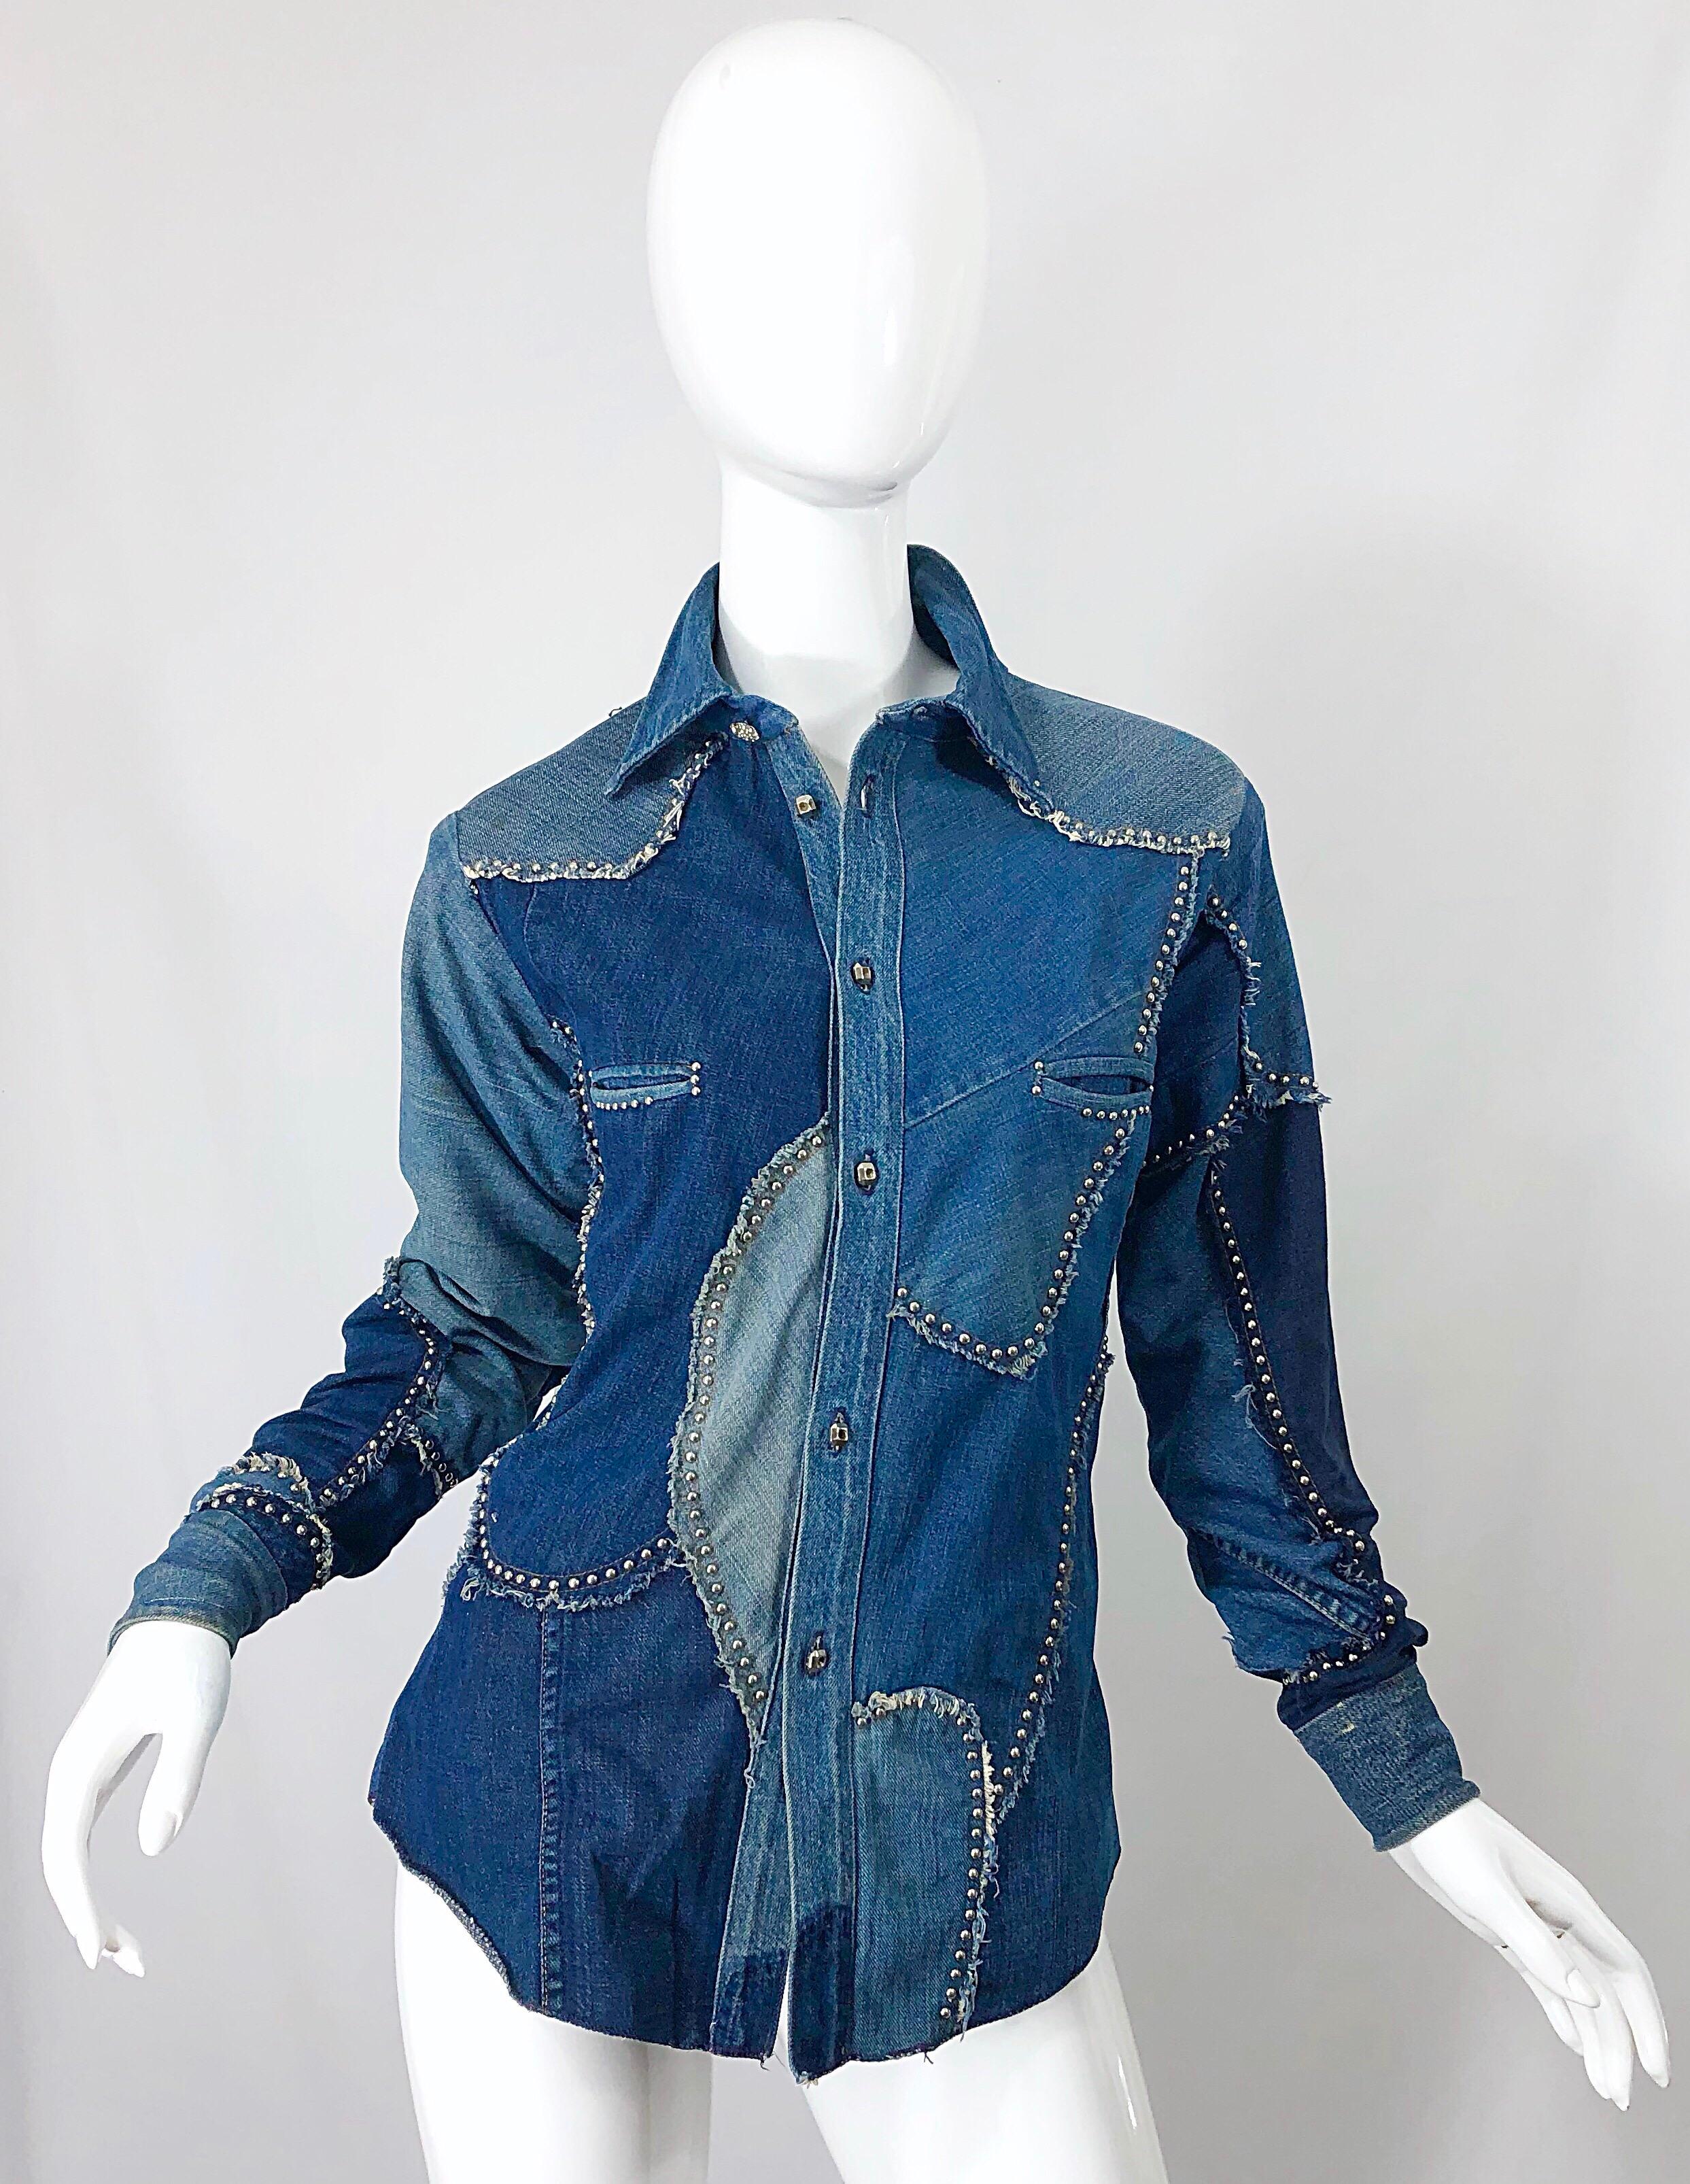 Erstaunlich und seltenes Musuem-Stück! 1970er Jahre LOVE, MELODY blauen Jeans besetzten Langarm-Patchwork-Shirt! Melody Sabatasso war der Kopf hinter der Marke. Sie verwendete alte Levi's-Jeans als Stoff für ihre Entwürfe. In den 70er Jahren